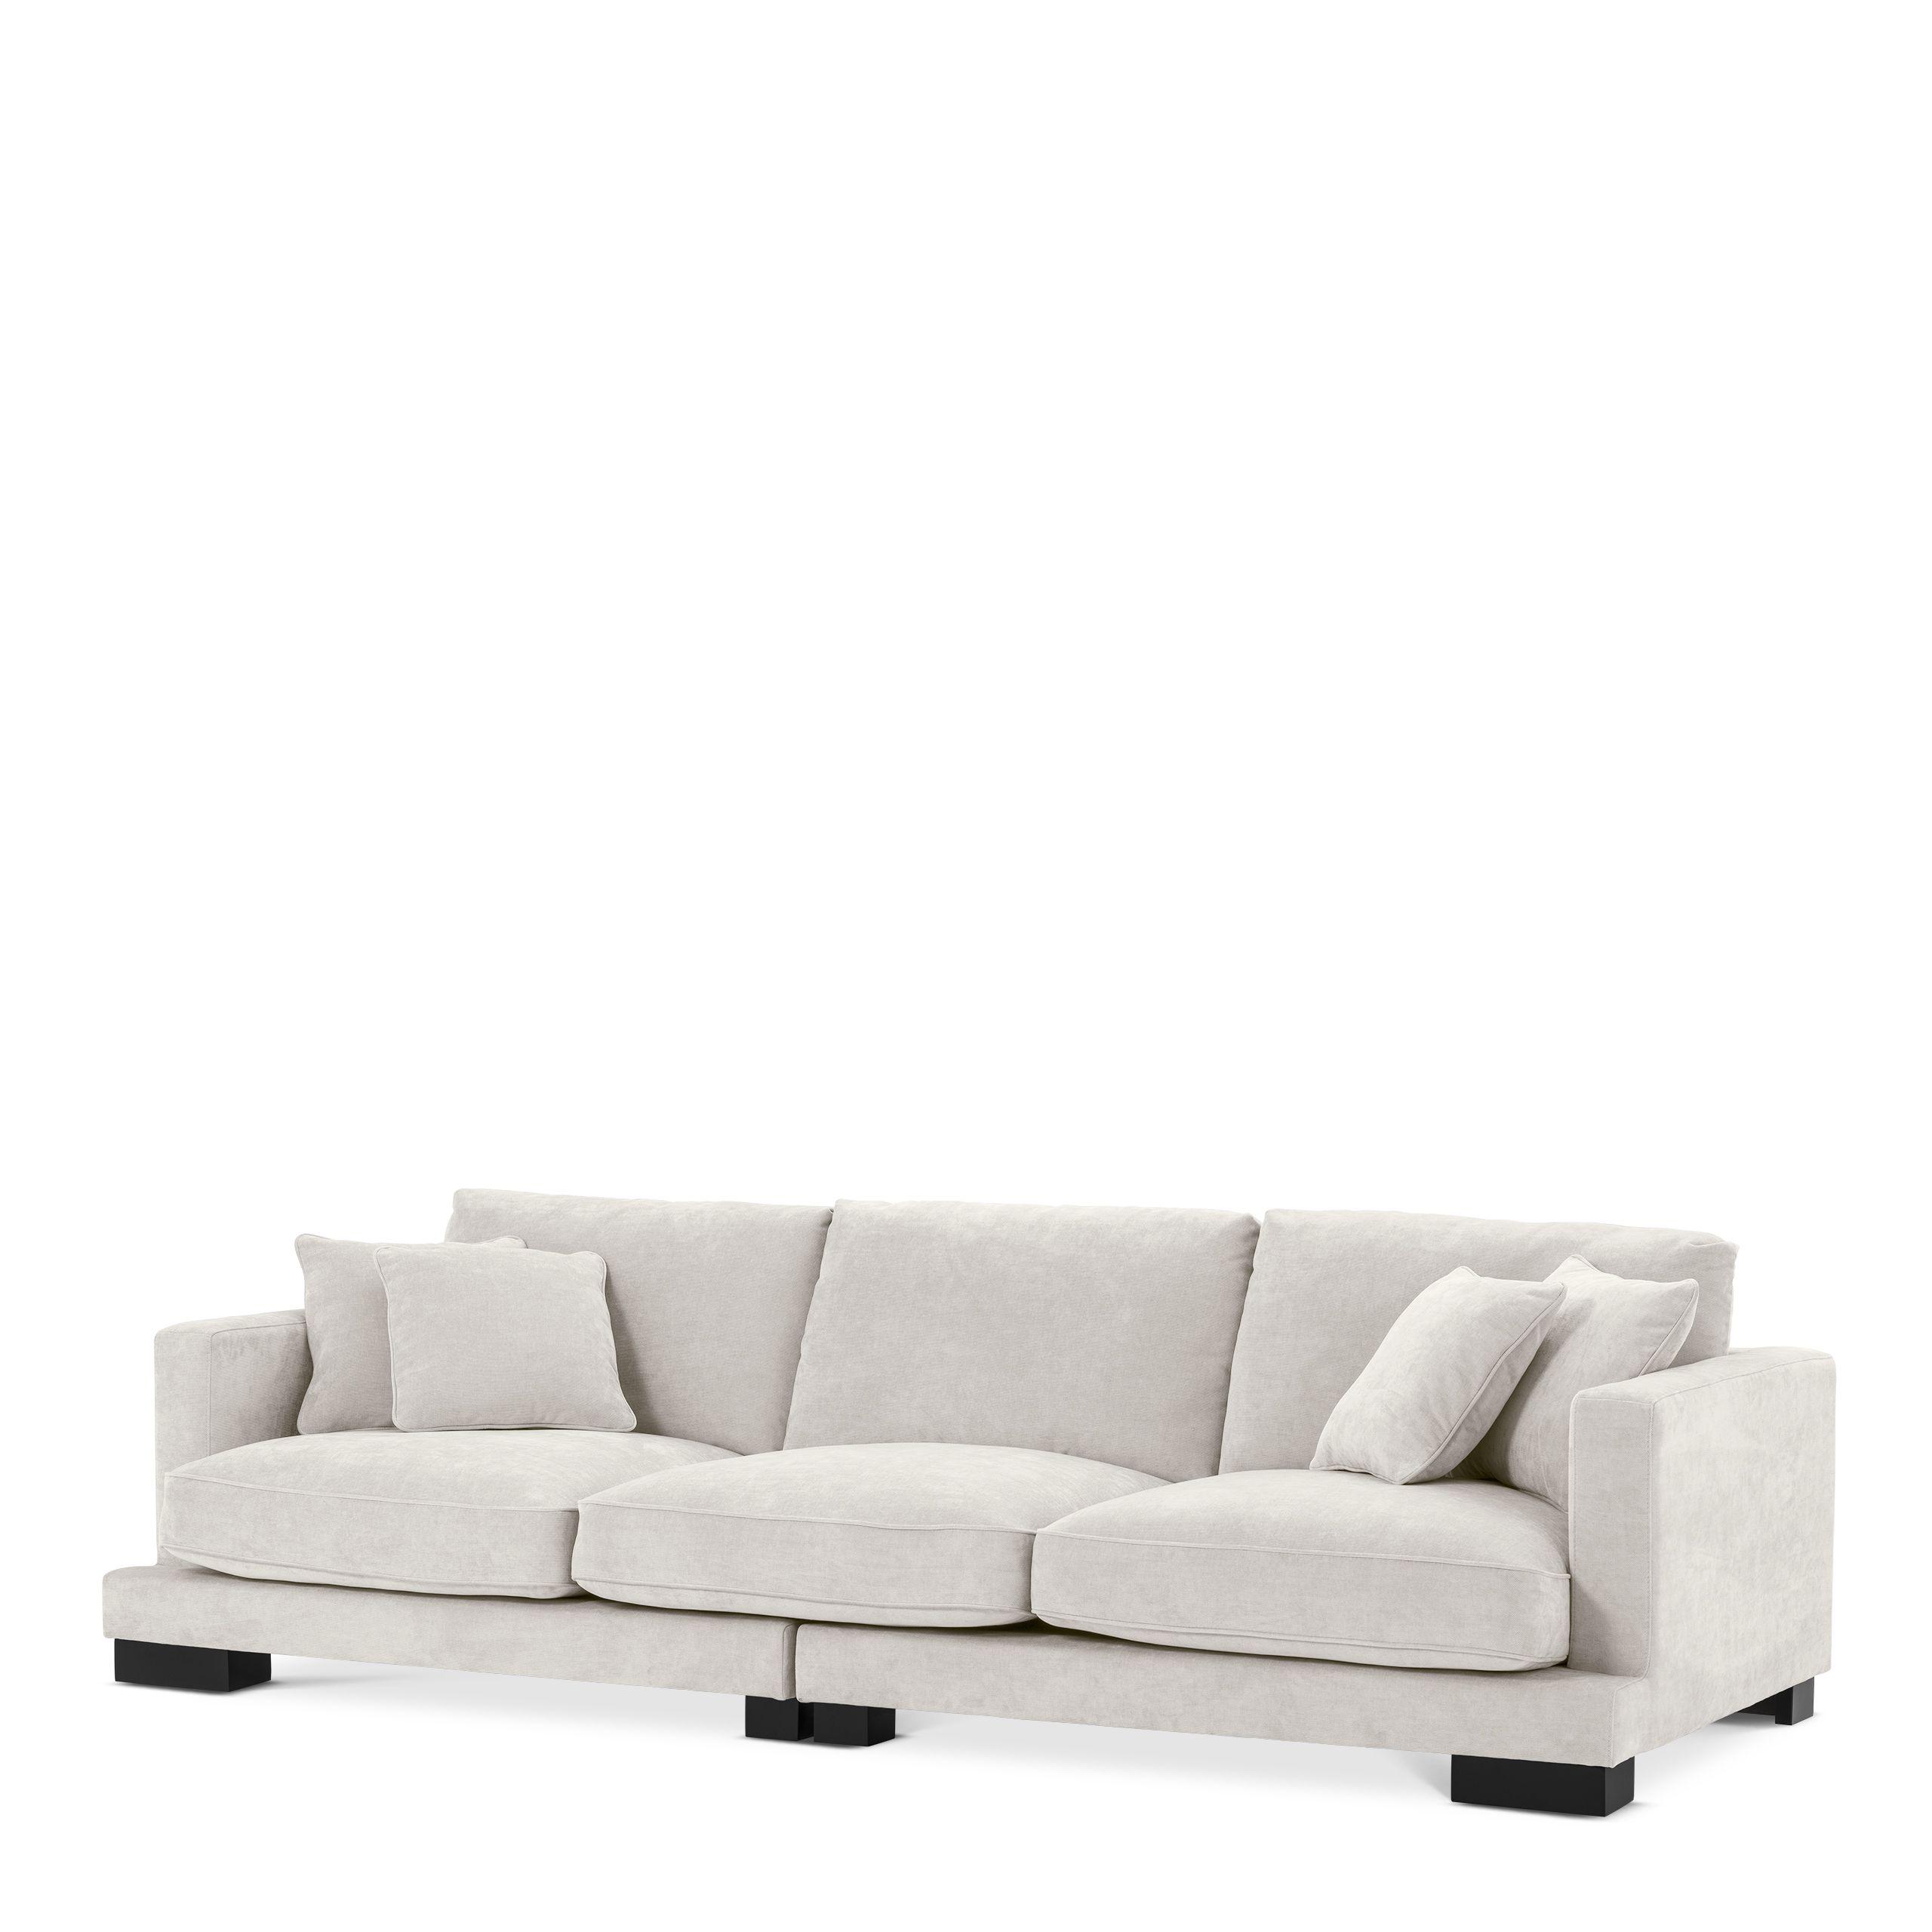 Купить Прямой диван Sofa Tuscany в интернет-магазине roooms.ru